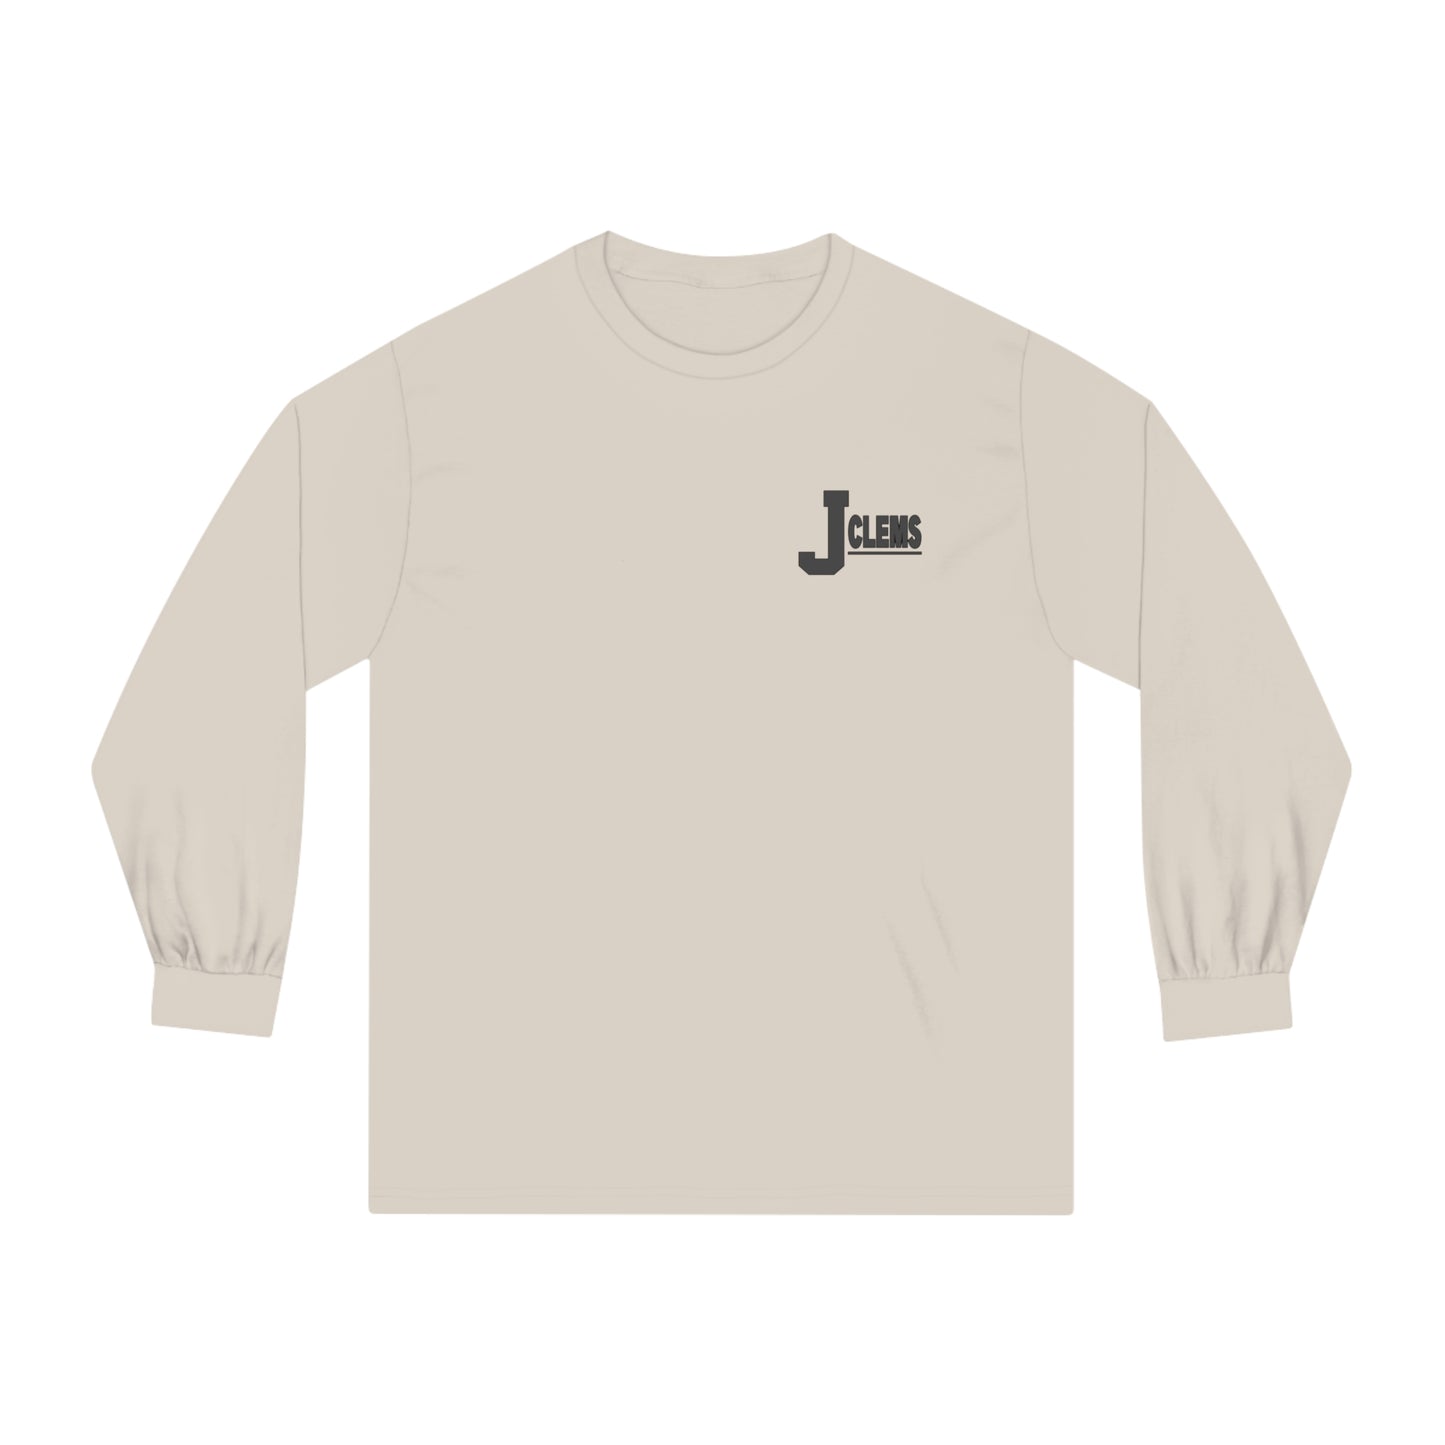 Jclems Classic Long Sleeve T-Shirt